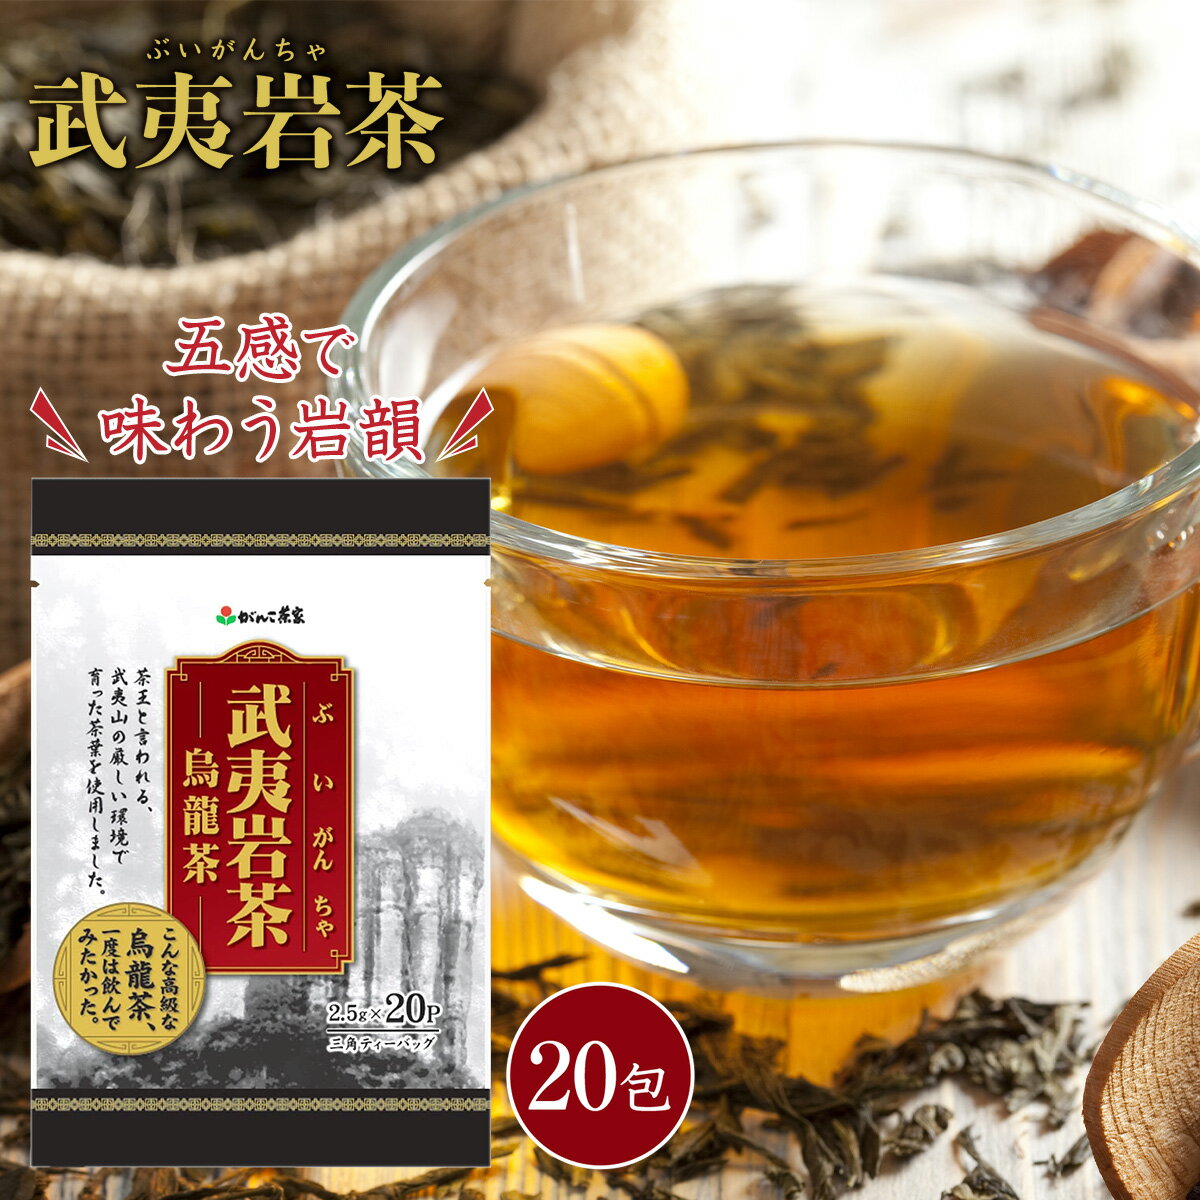 可愛い べんり 新芽牌 中国茶 ジャスミン茶20TB×24セット 82-1 人気 送料無料 おしゃれな 雑貨 通販